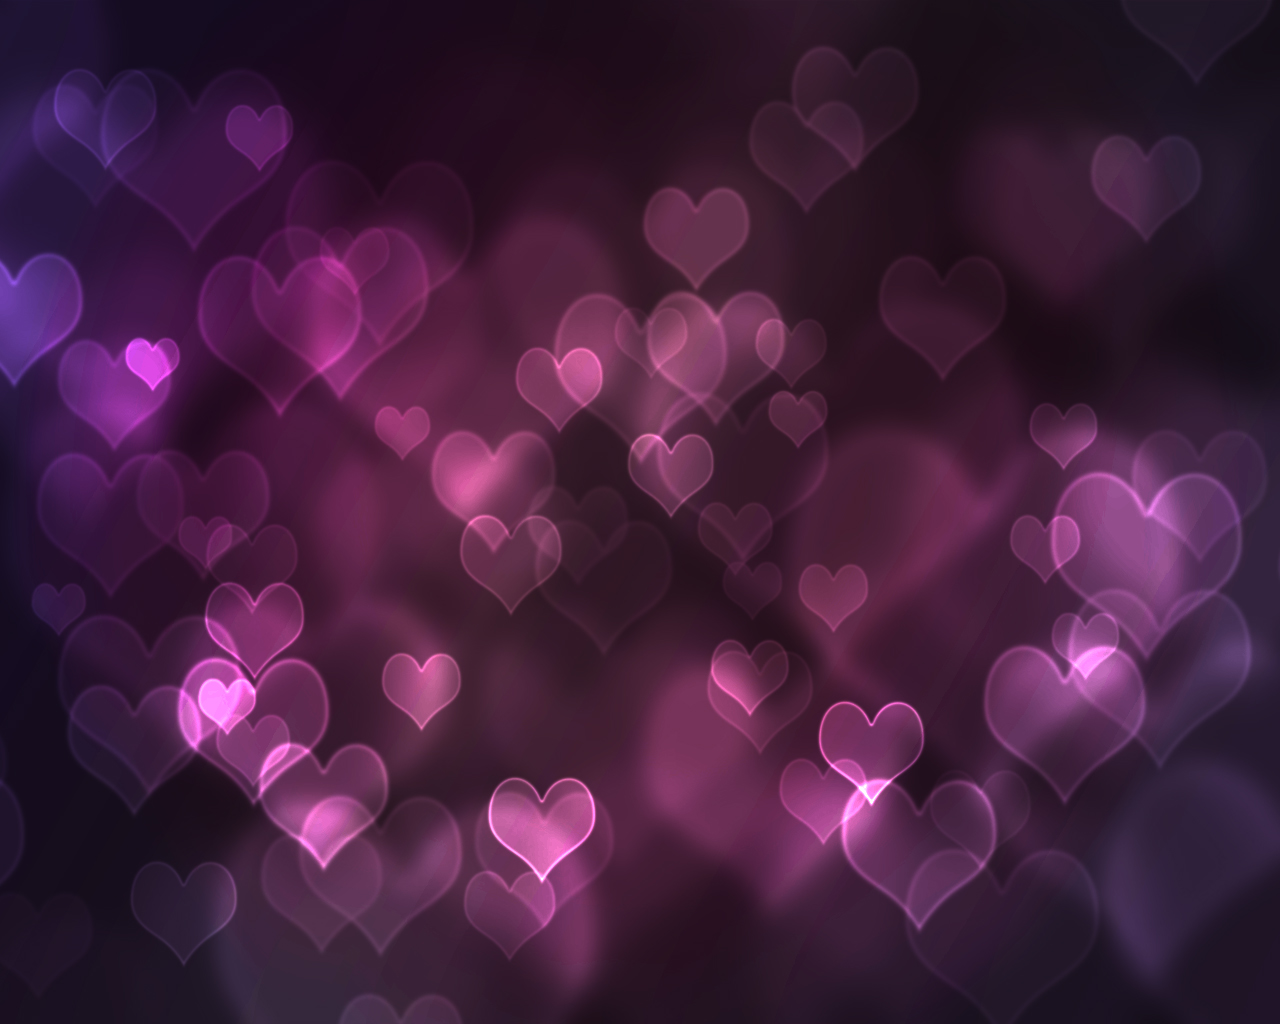 https://blogger.googleusercontent.com/img/b/R29vZ2xl/AVvXsEiMqGDS116qhgYrj2QVe4THn2H1ydVf8Bn1m6bzNiKYCEDFamwRP0puCxBgEtvVVHRvg41Z17N2ORMEQHqQO36oOlOOj1XmNbdvTnY2wsNKCI3nqhCfQ17D1rdq_YGGZMLveSP9RjSPJuG-/s1600/Purple-Hearts-Bokeh-Effect-Background_1280x1024.jpg